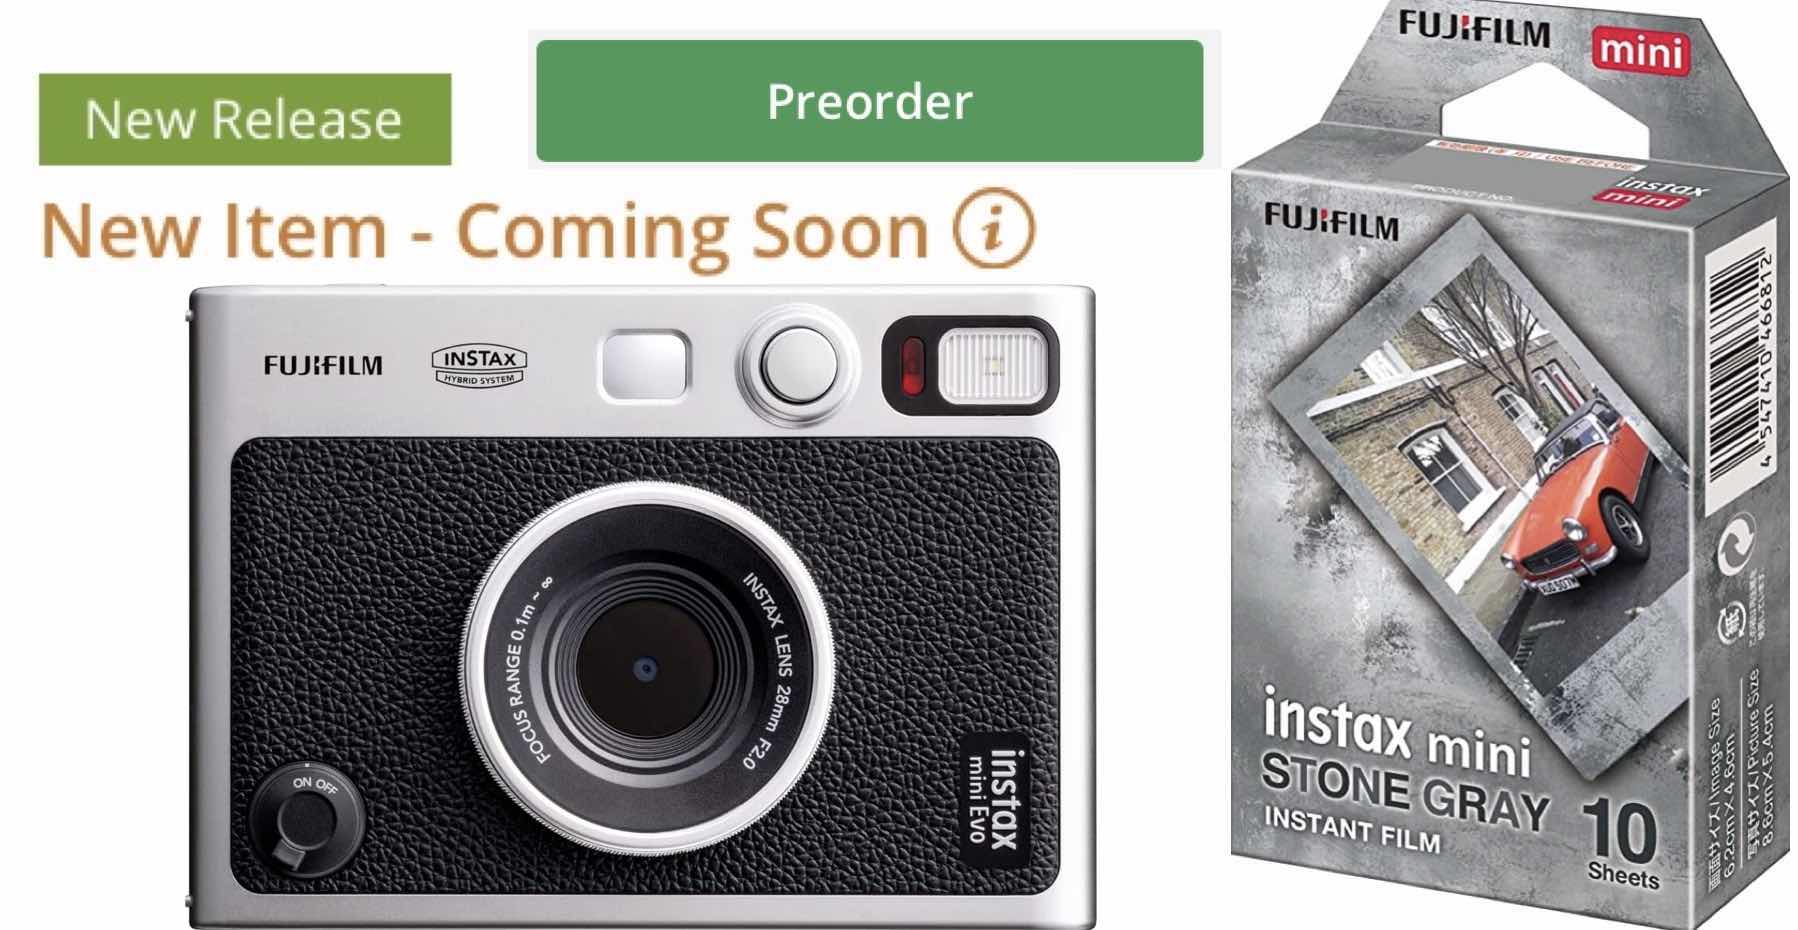 Fujifilm Instax Mini EVO and Stone Gray Film Pre-Order Available